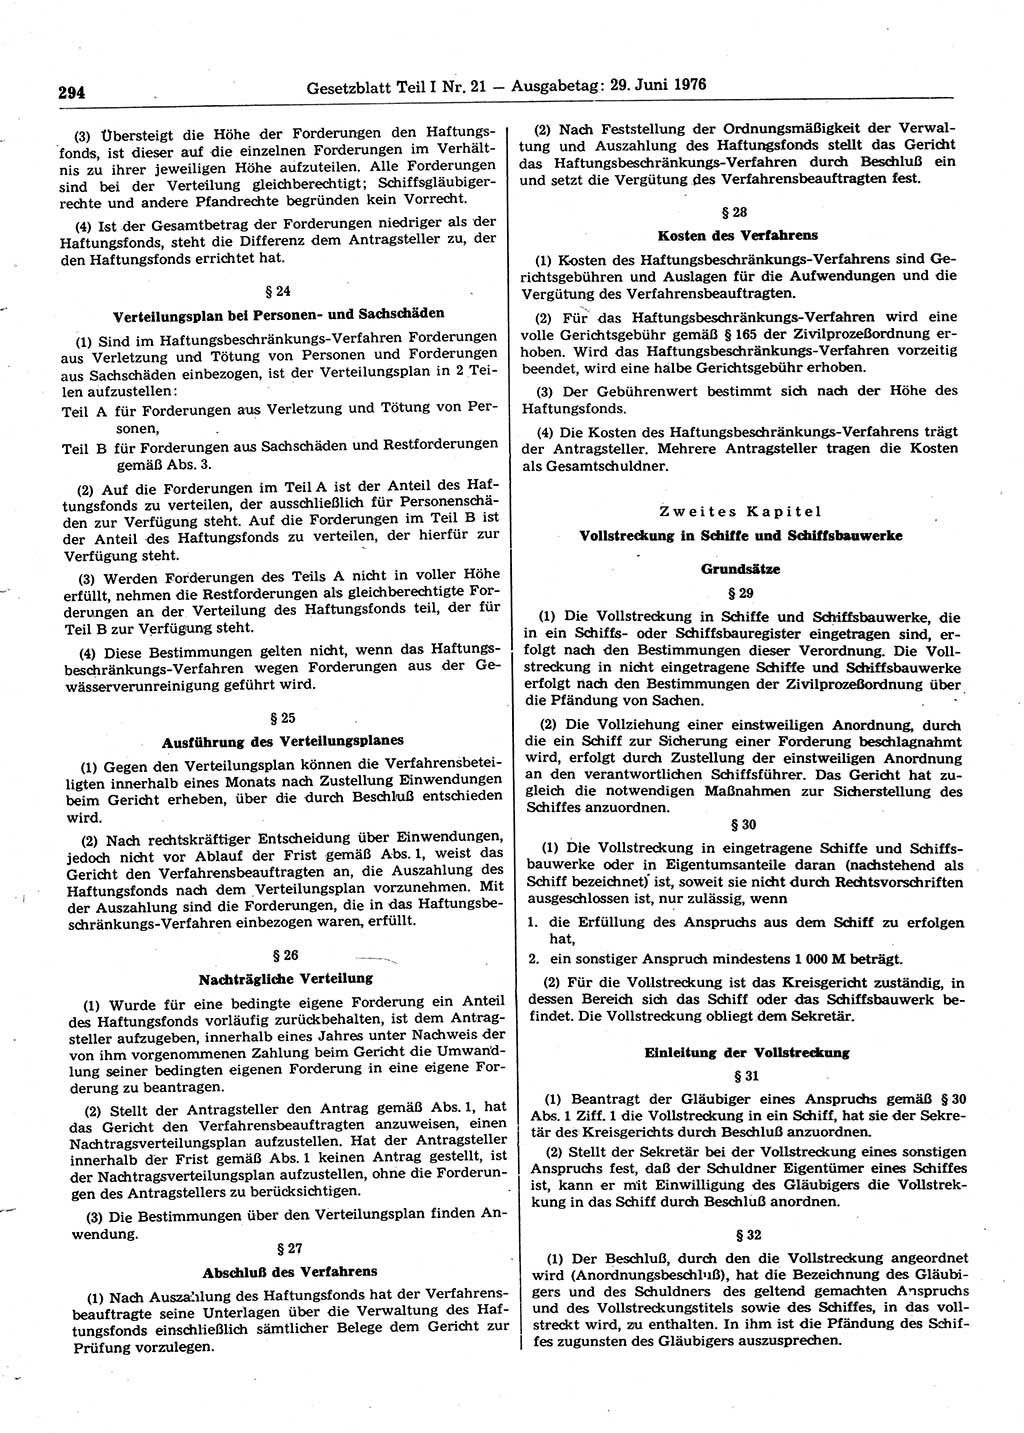 Gesetzblatt (GBl.) der Deutschen Demokratischen Republik (DDR) Teil Ⅰ 1976, Seite 294 (GBl. DDR Ⅰ 1976, S. 294)